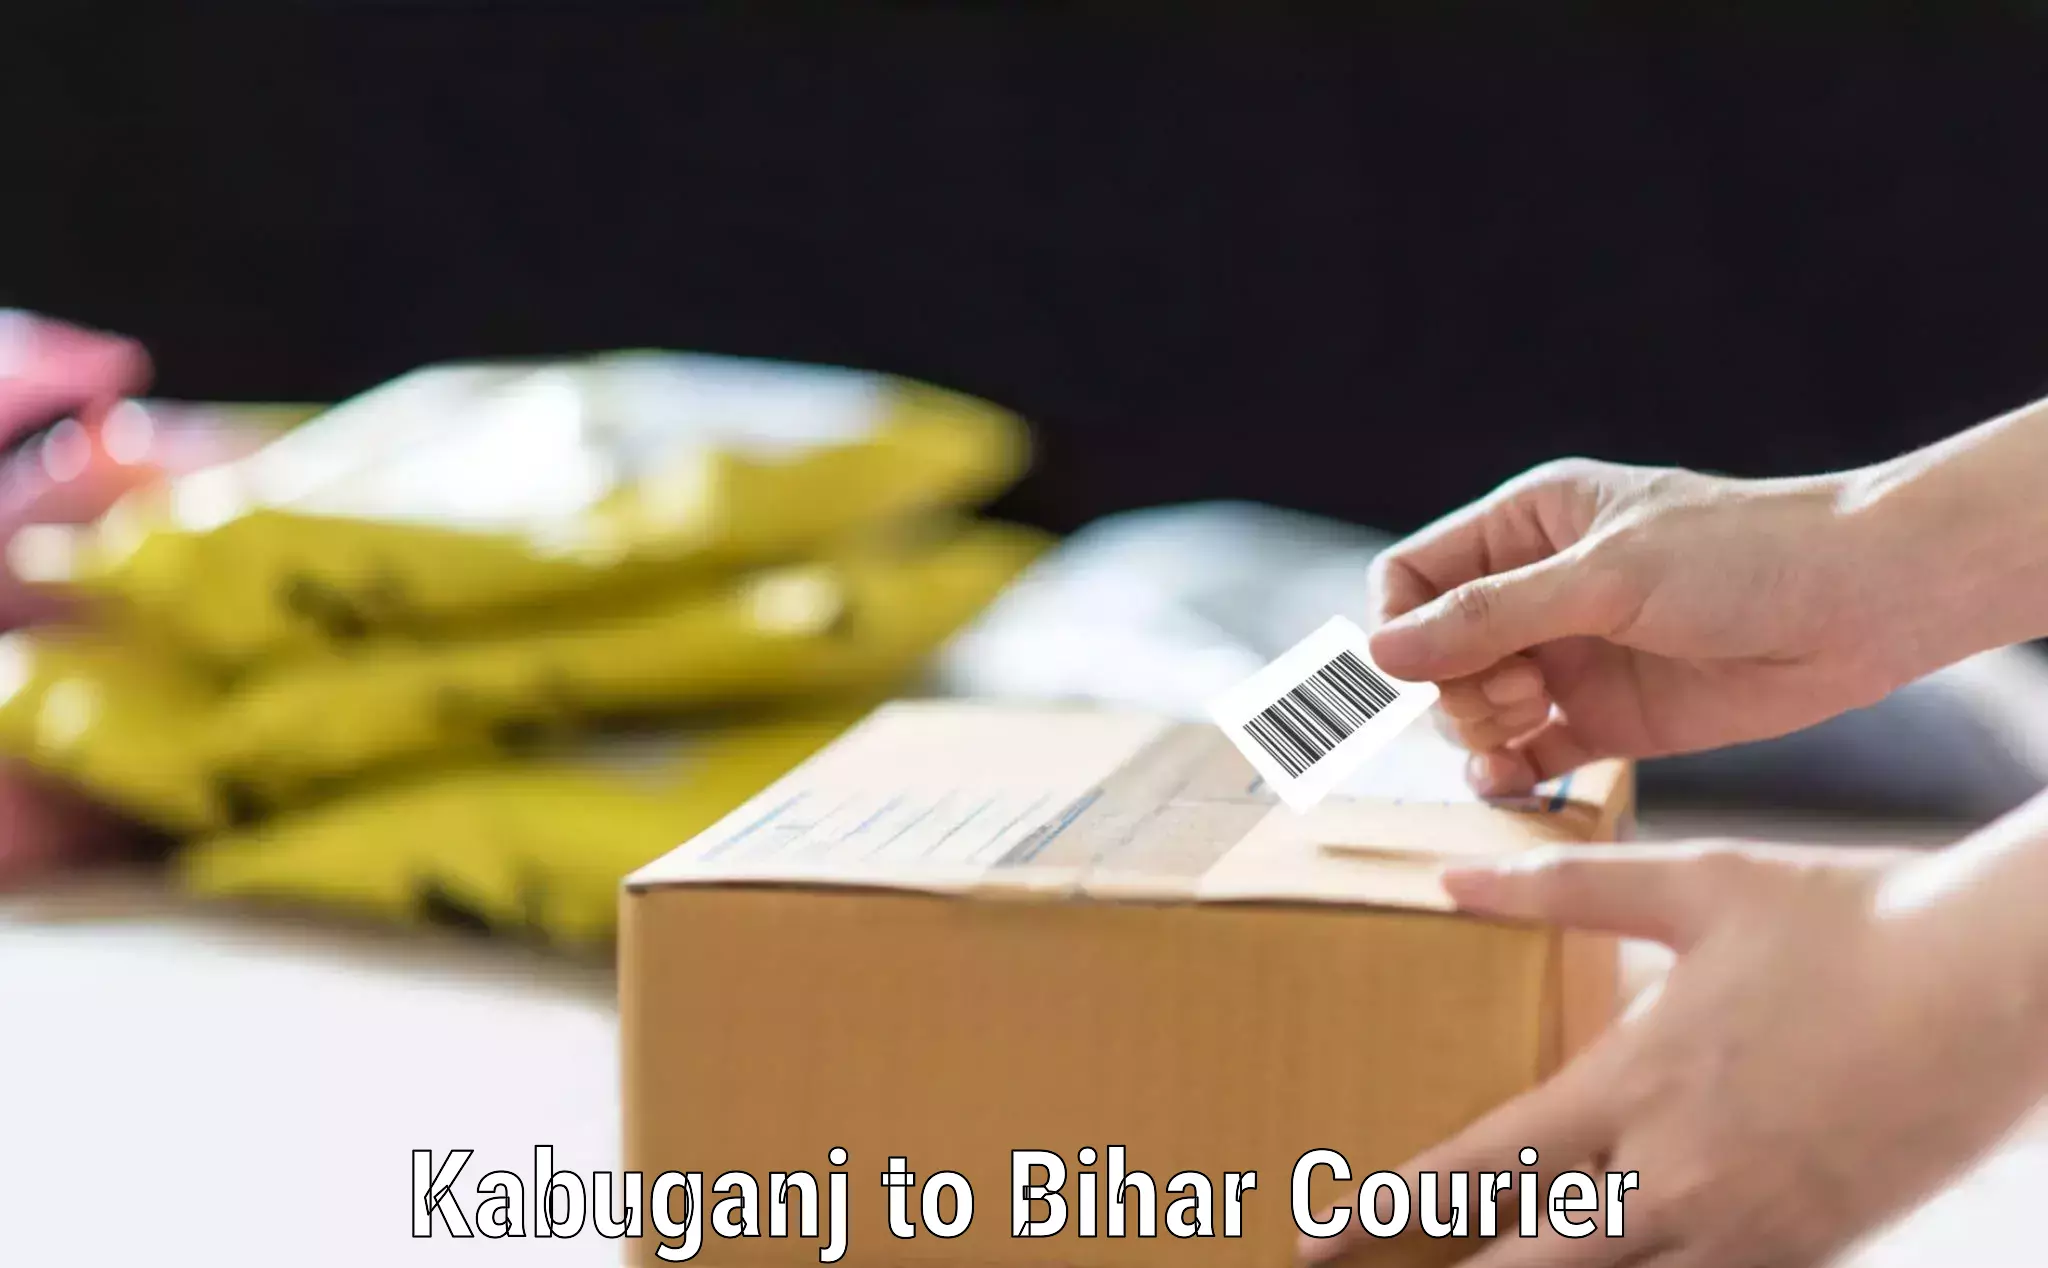 Personalized luggage shipping Kabuganj to Bihar